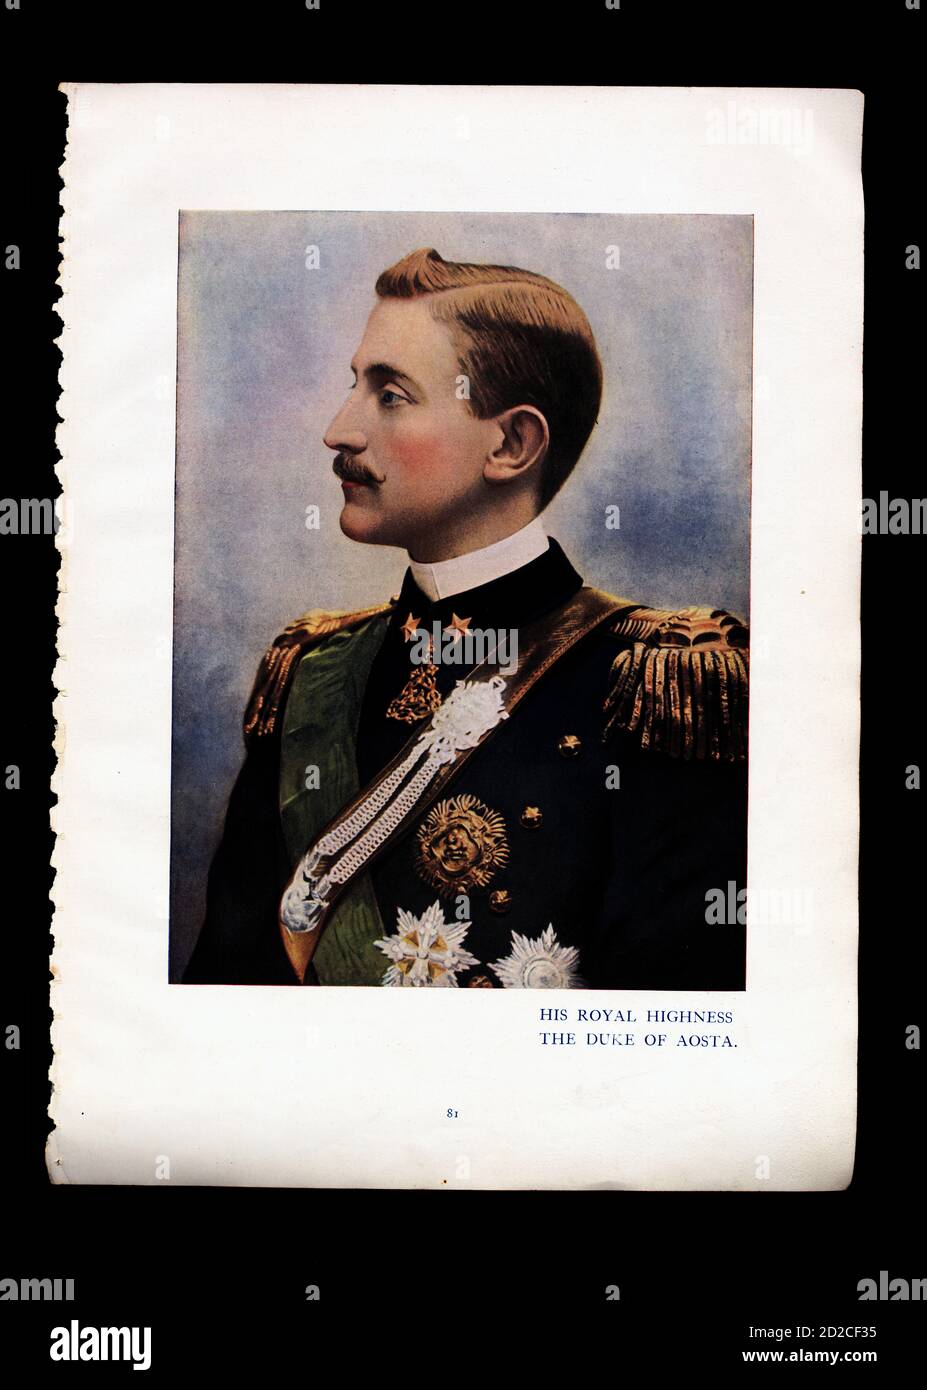 Ritratto Chromolithographic del principe Emanuele Filiberto (13 gennaio 1869 – 4 luglio 1931). Fu secondo duca d'Aosta e principe ereditario di Spagna. Foto Stock